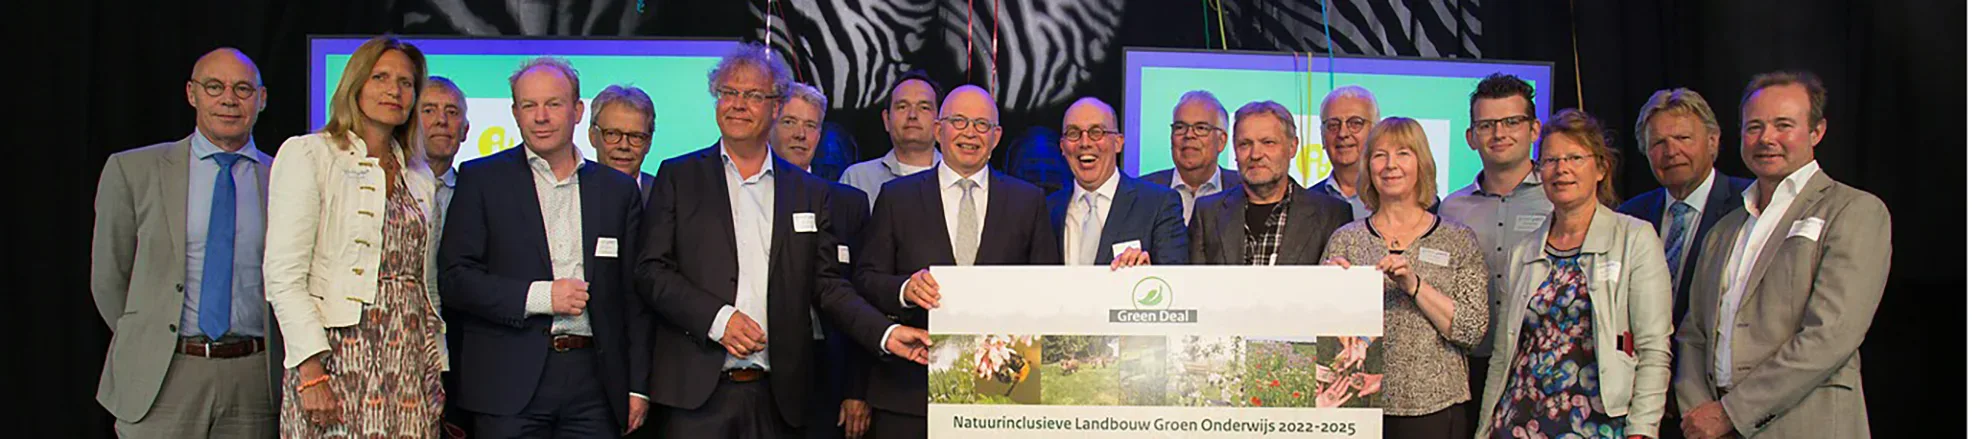 Ondertekening Green Deal Natuurinclusieve landbouw fase 2 mei 2022